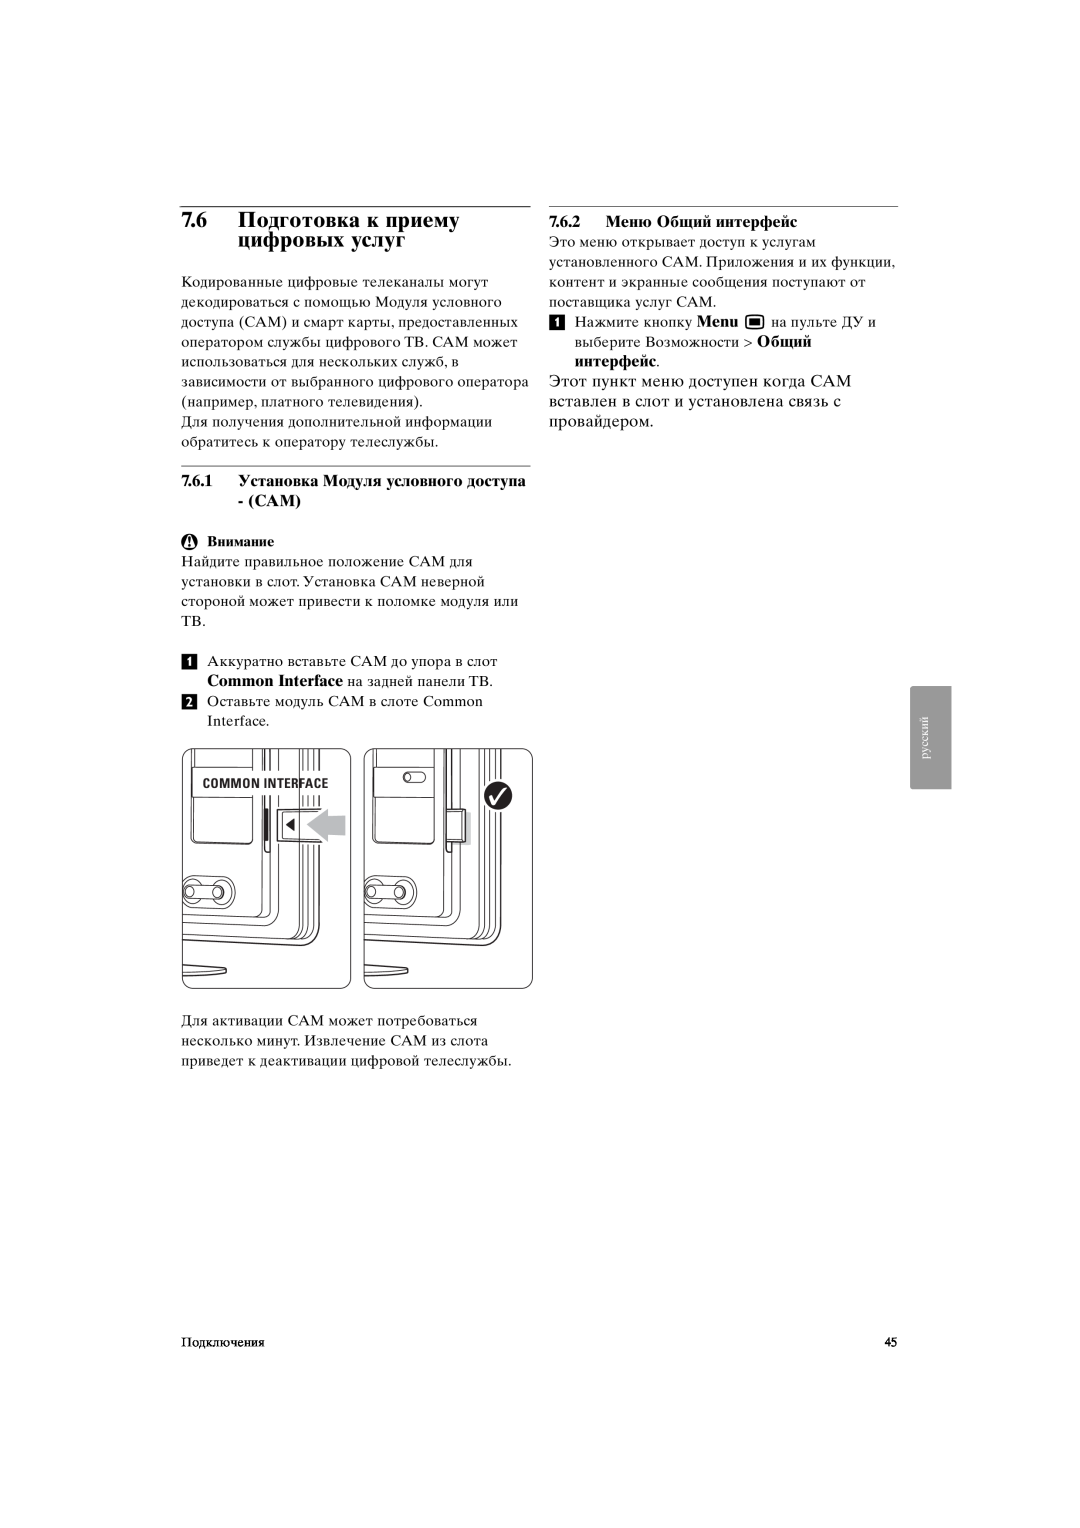 Philips 37PFL9903H/10 manual 7.6Подготовка к приему цифровых услуг, 7.6.1Установка Модуля условного доступа - CAM, Внимание 